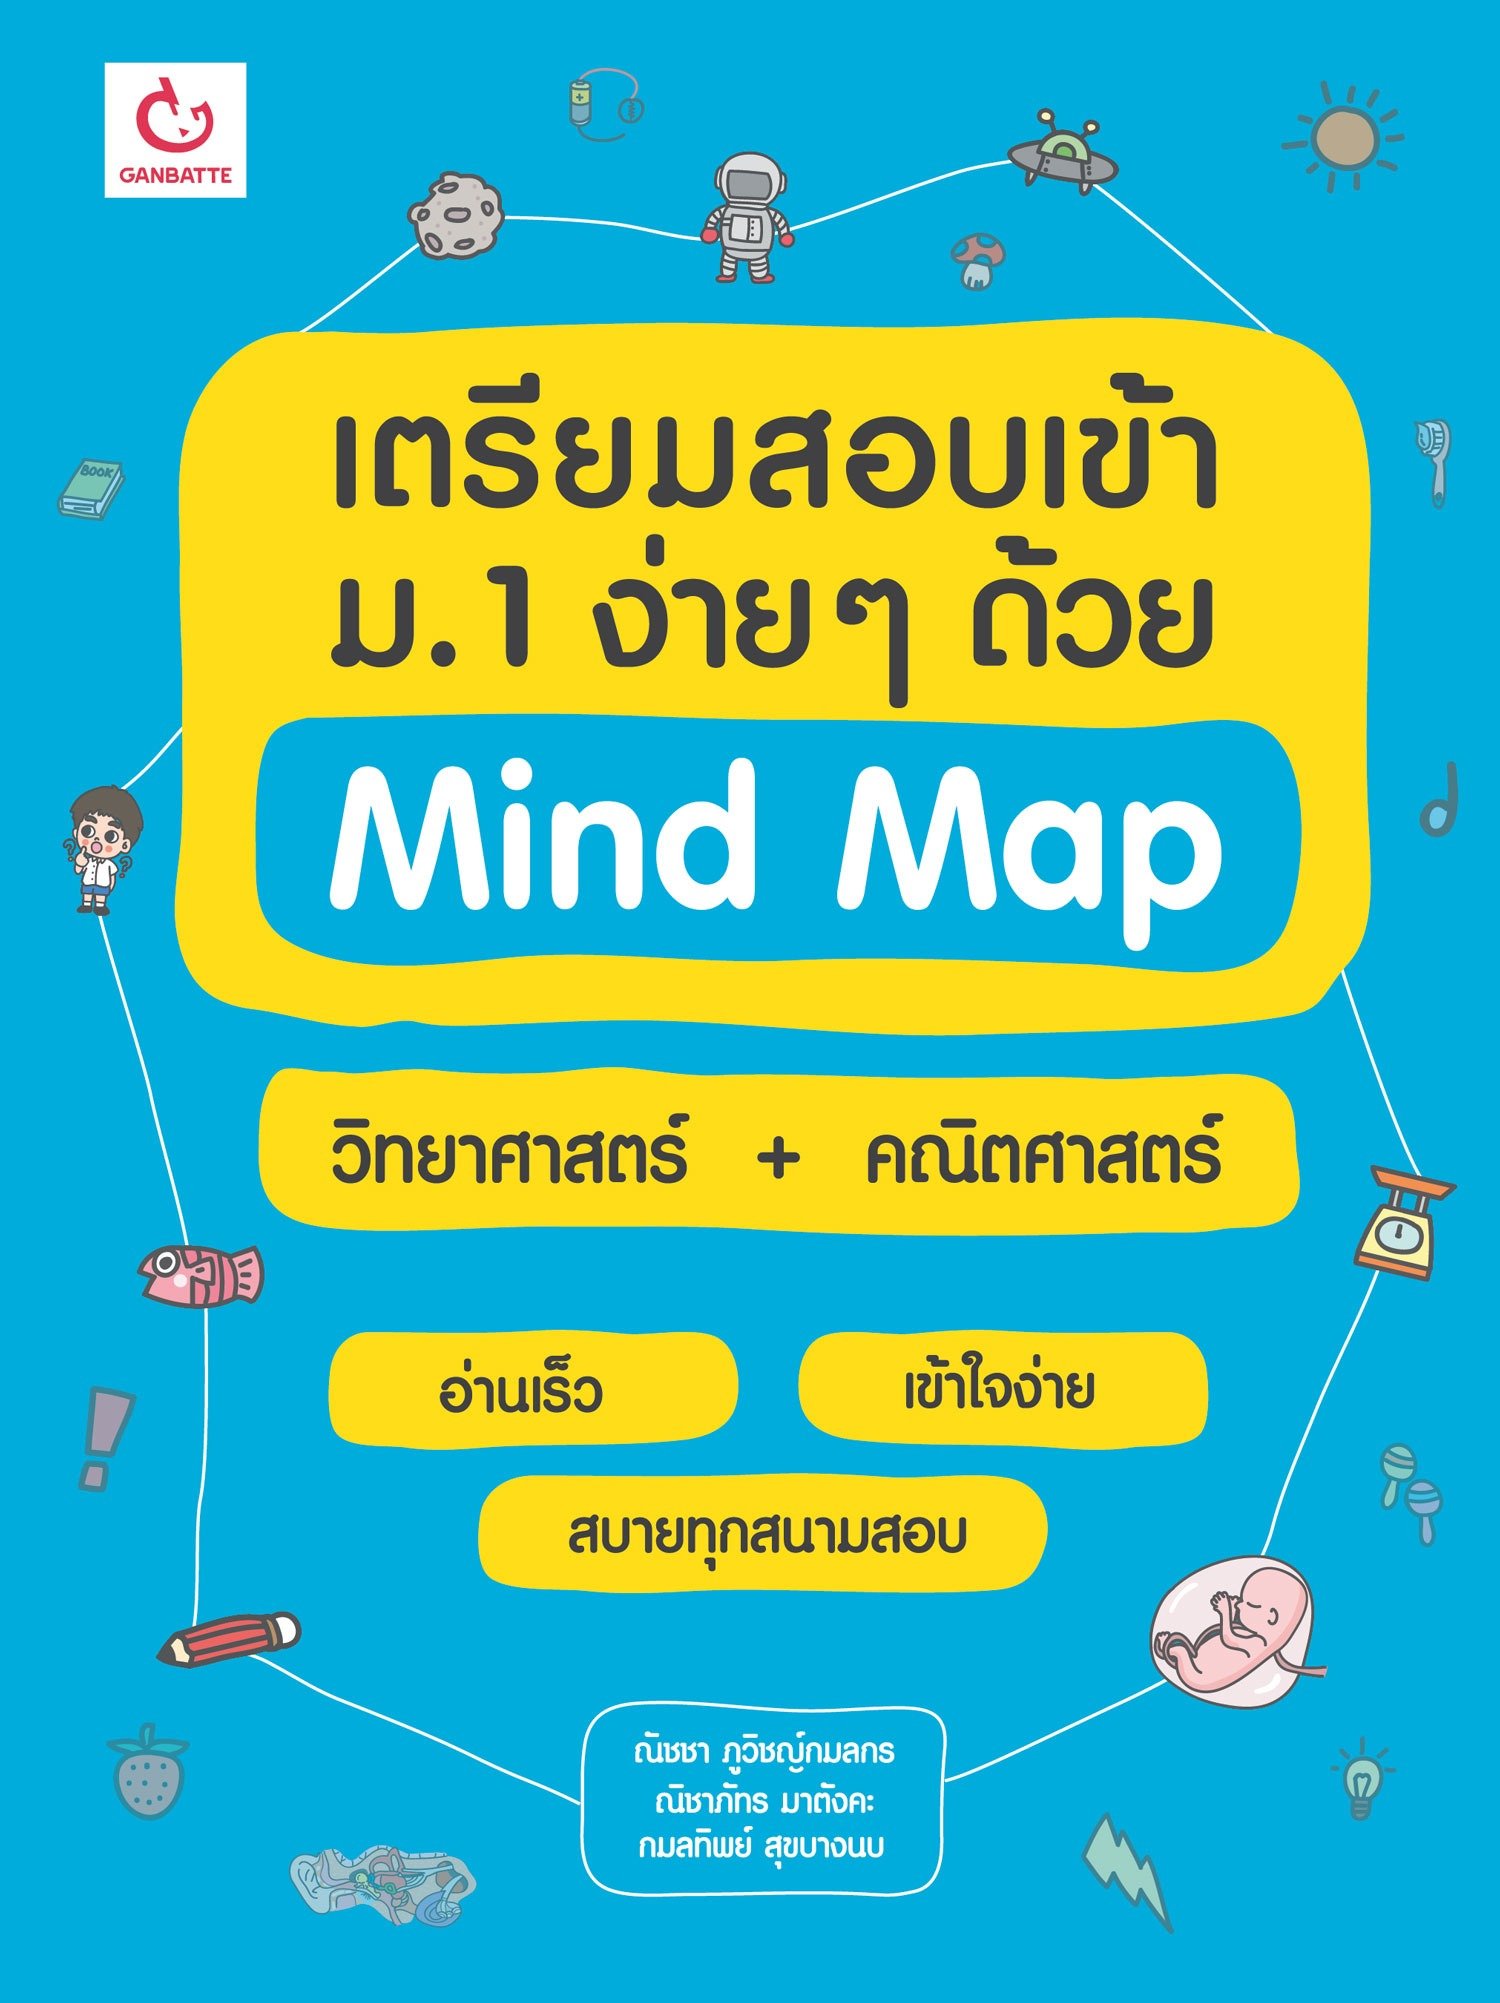 เตรียมสอบเข้า ม.1 ง่ายๆ ด้วย Mind Map วิทยาศาสตร์+คณิตศาสตร์